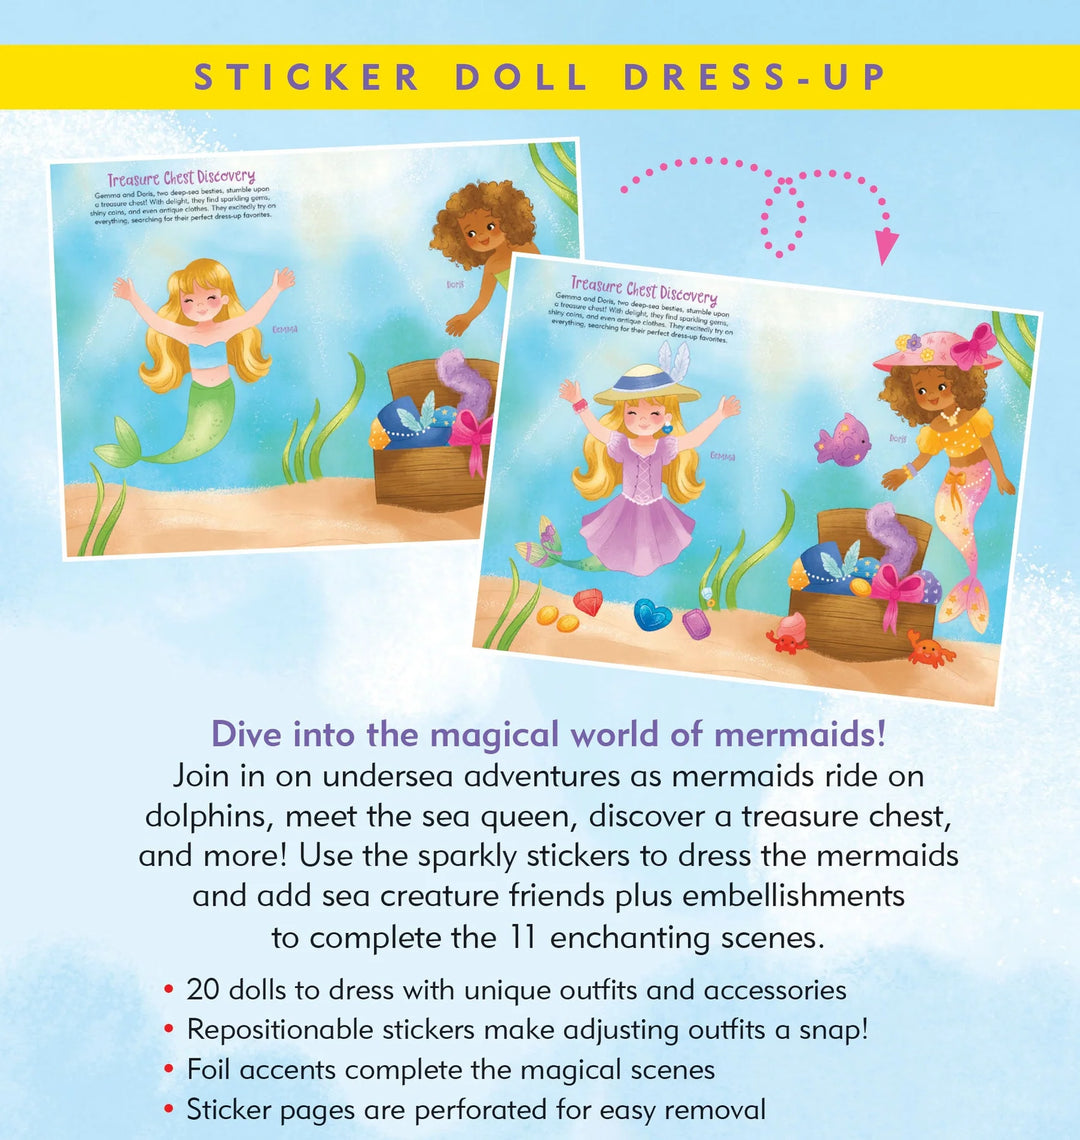 Sticker Doll Dress-Up Book - Mermaids